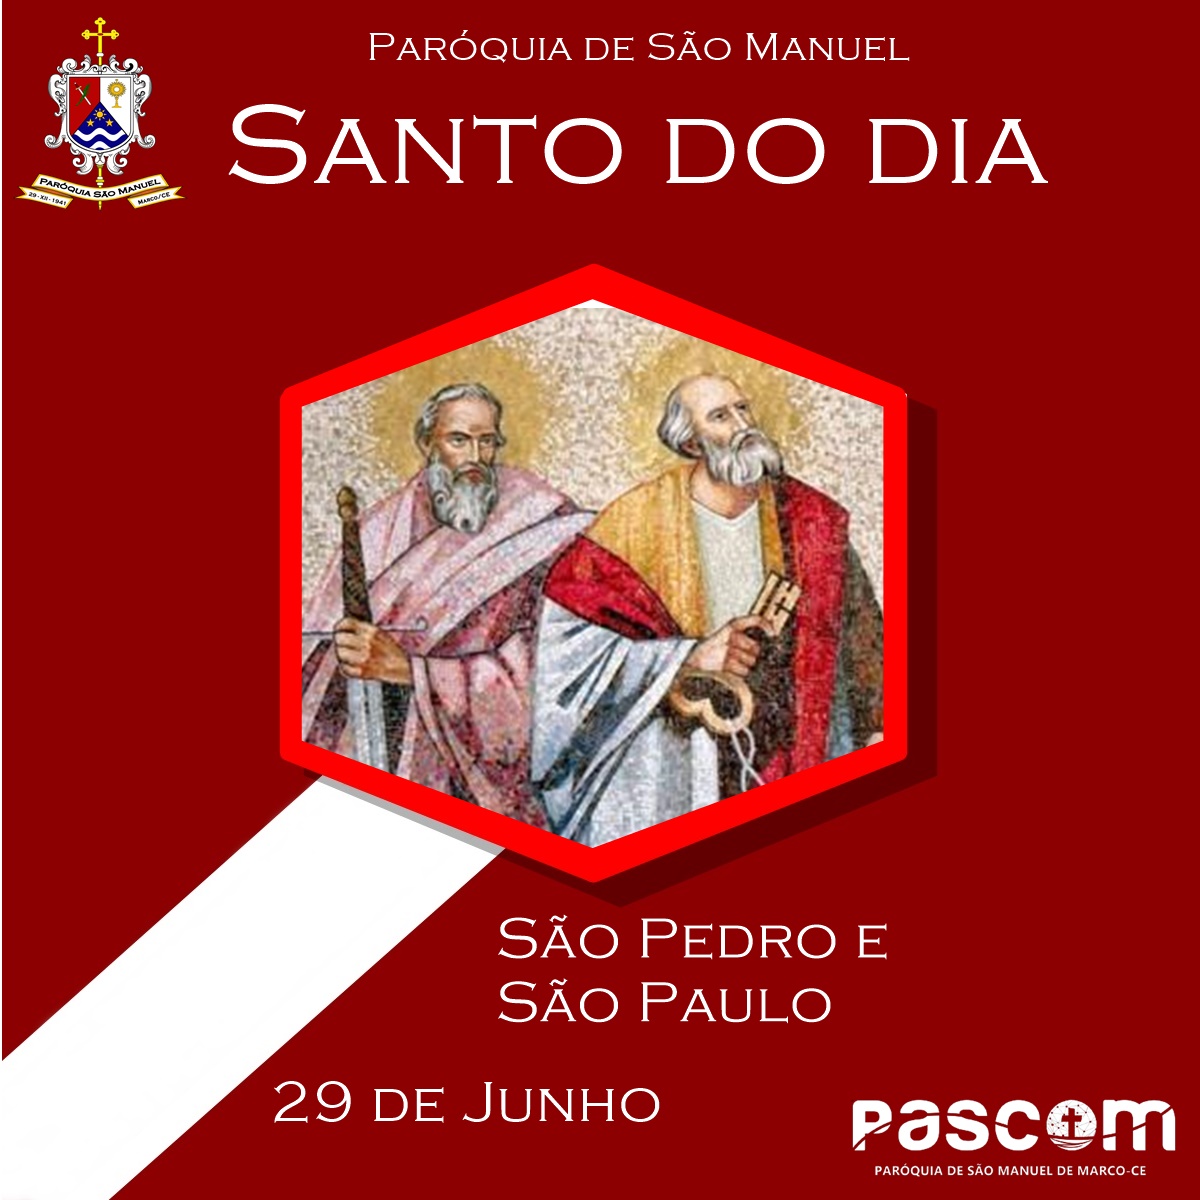 São Pedro e São Paulo. Créditos: Paróquia de São Manuel